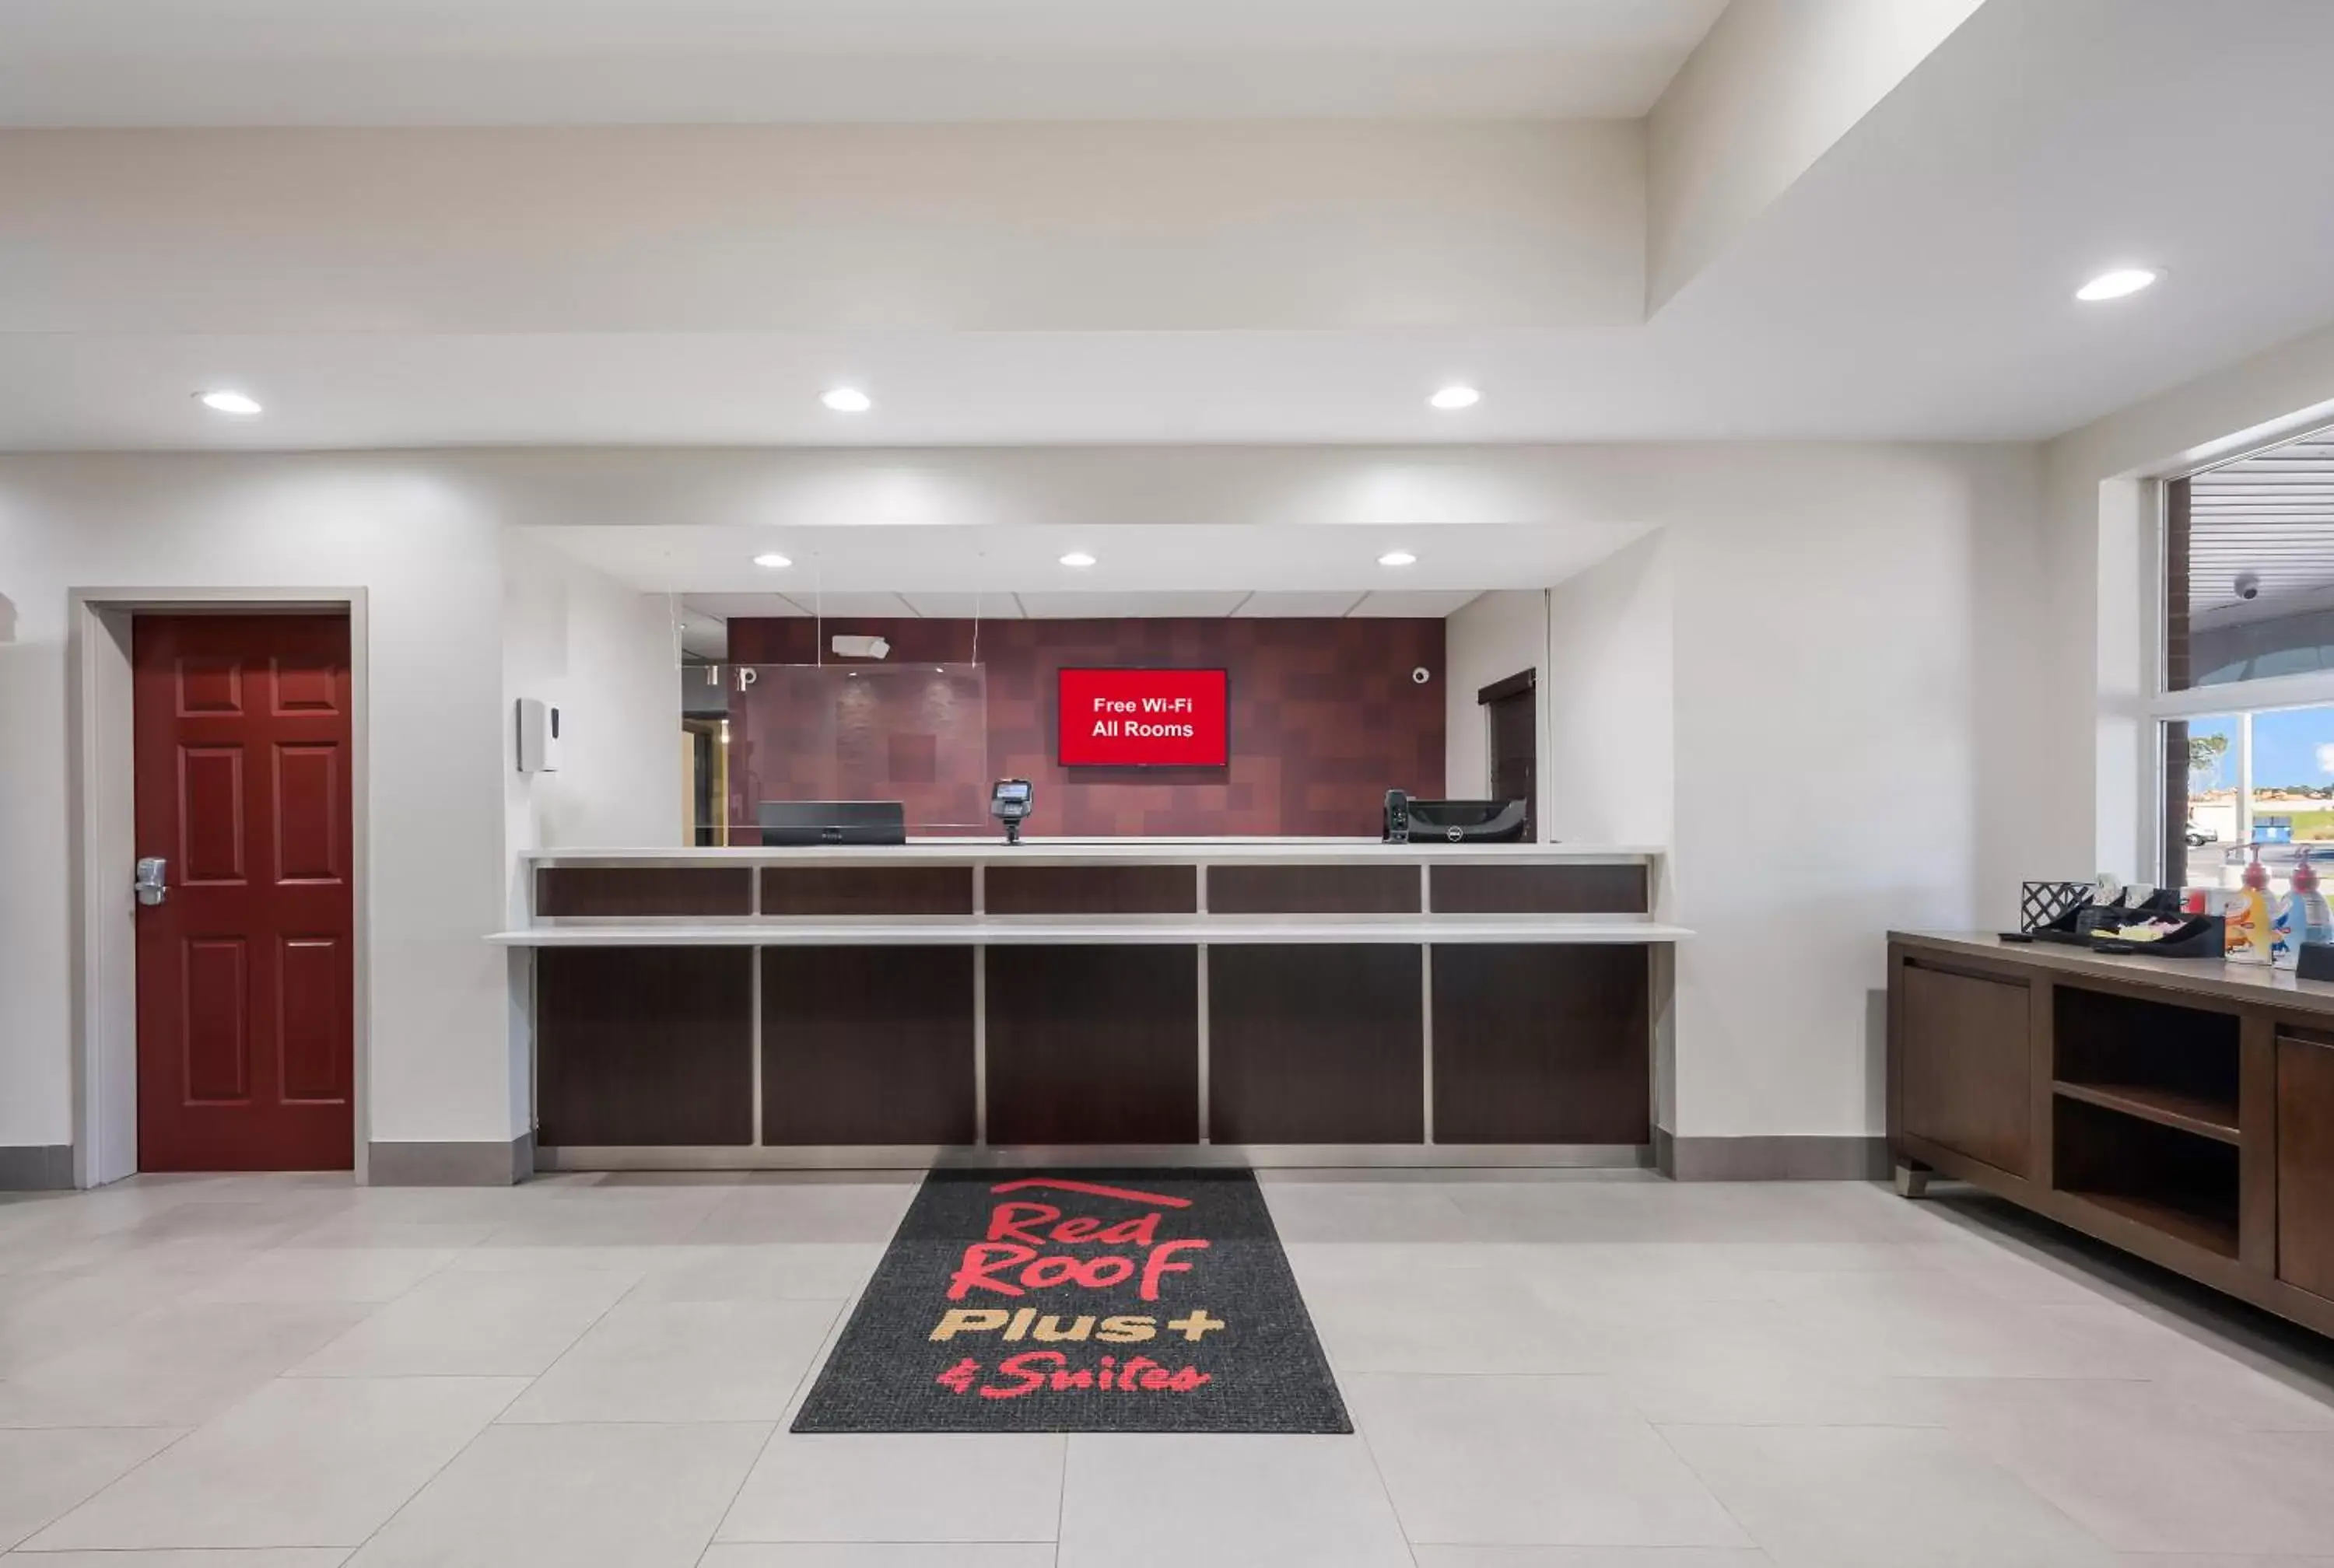 Lobby or reception, Kitchen/Kitchenette in Red Roof Inn PLUS & Suites Birmingham - Bessemer